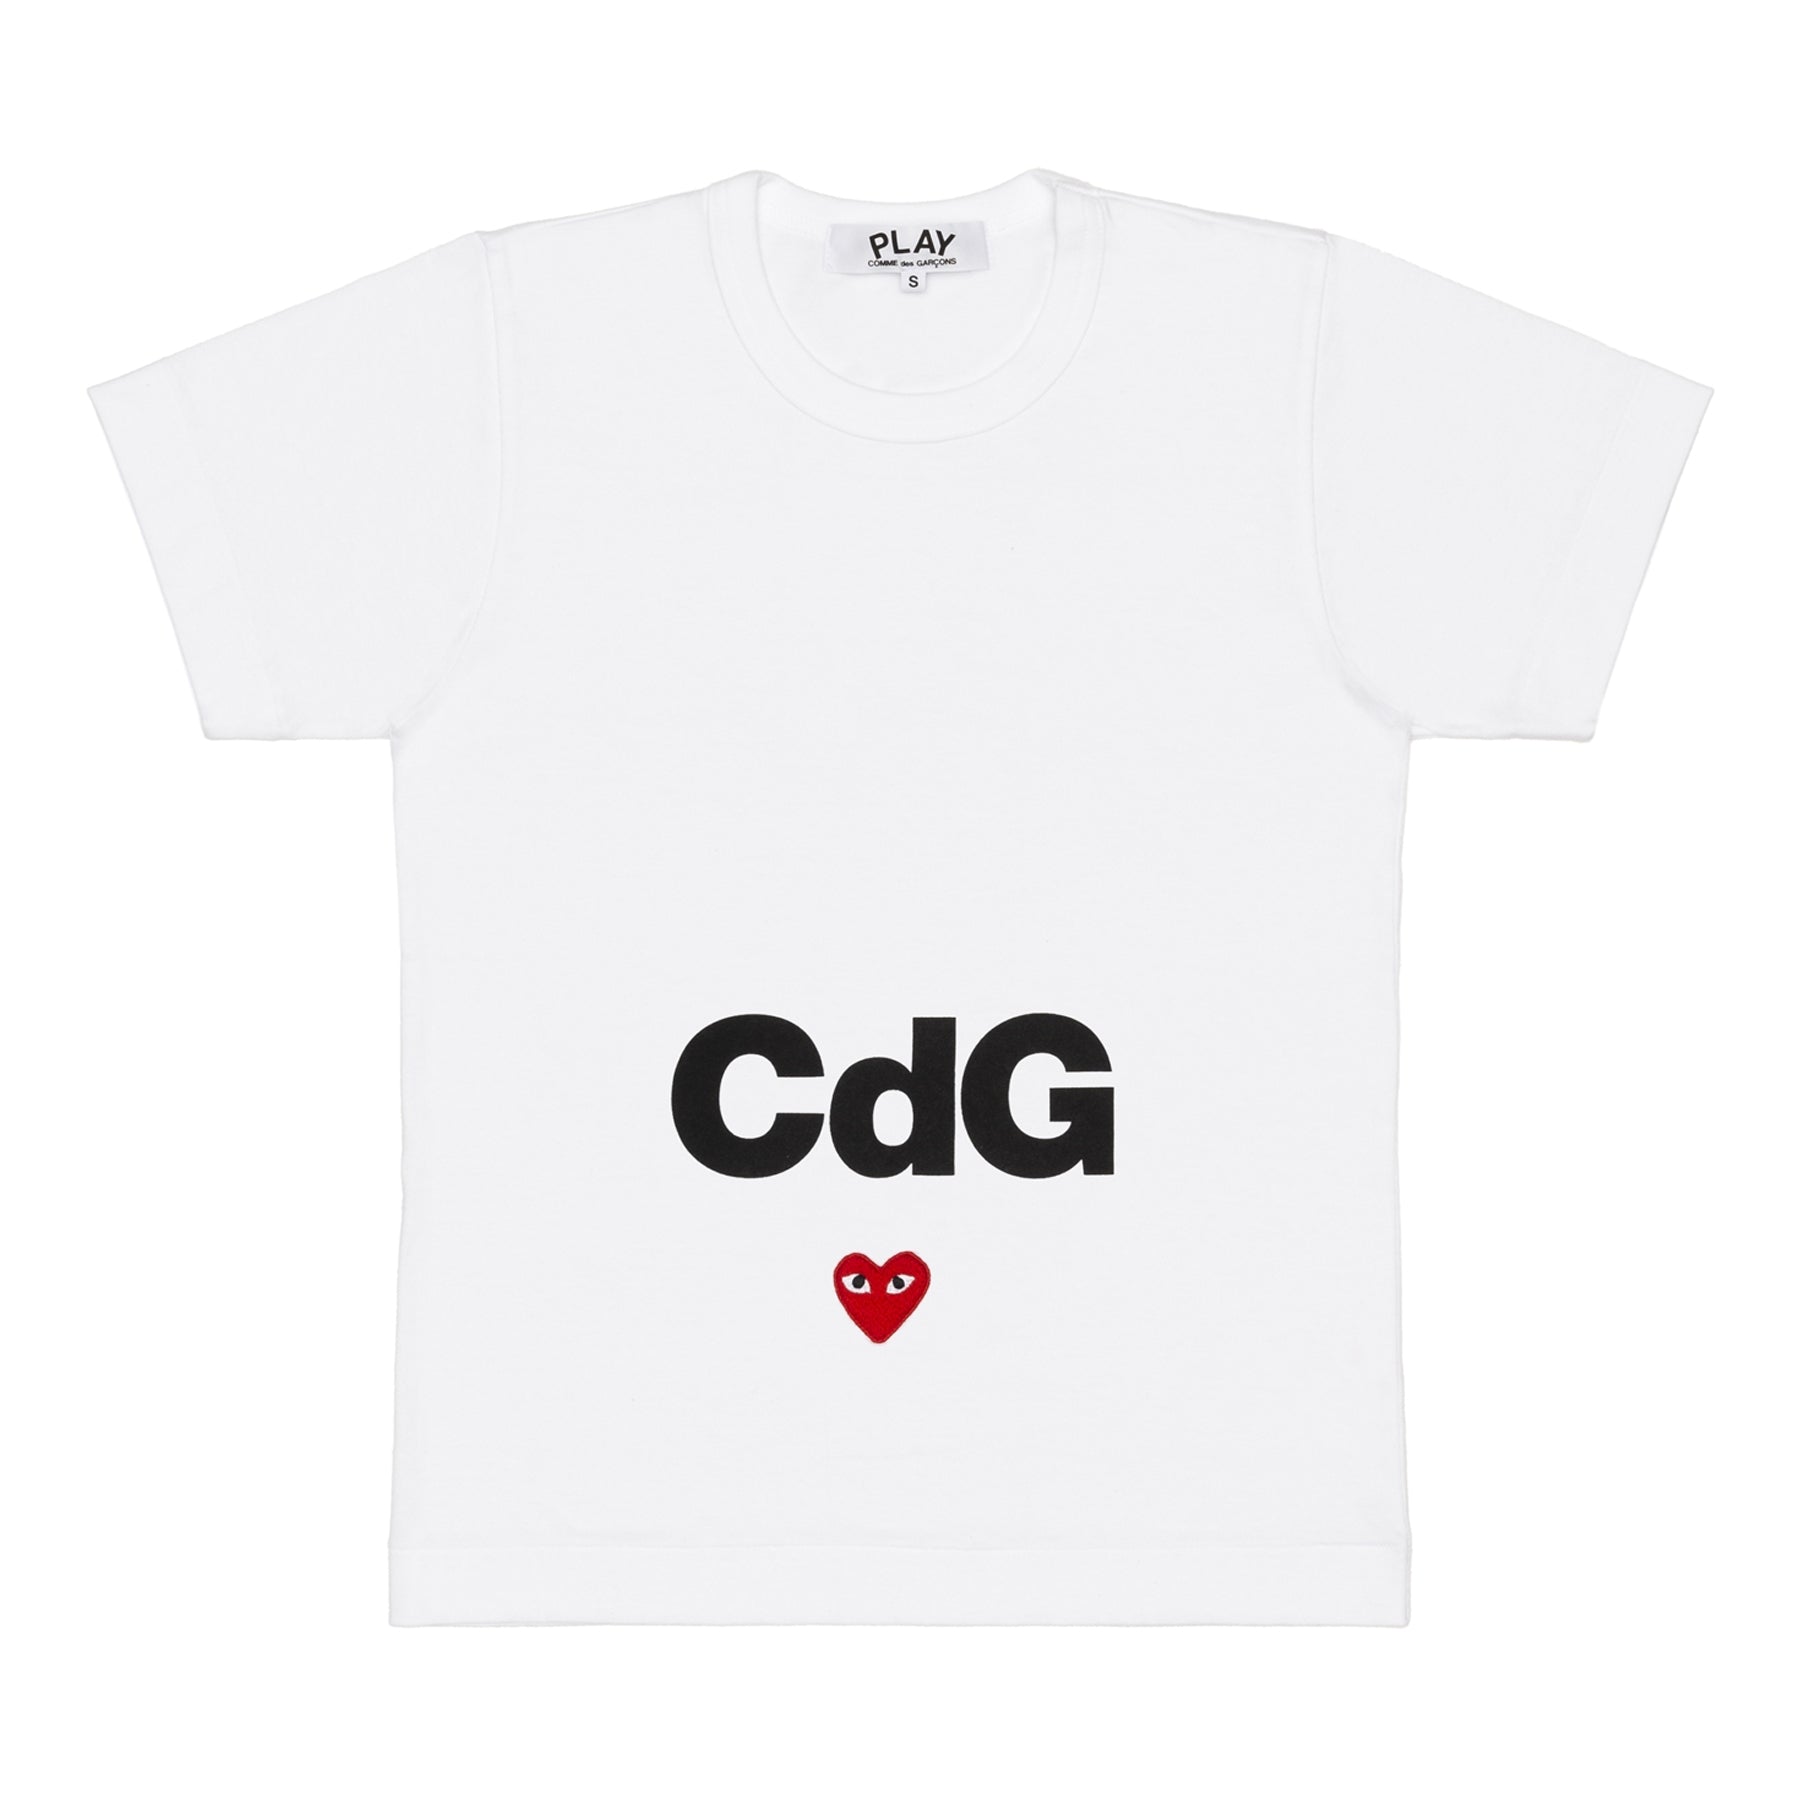 CDG PLAY - Cdg X Play T-Shirt - (White) – DSMG E-SHOP